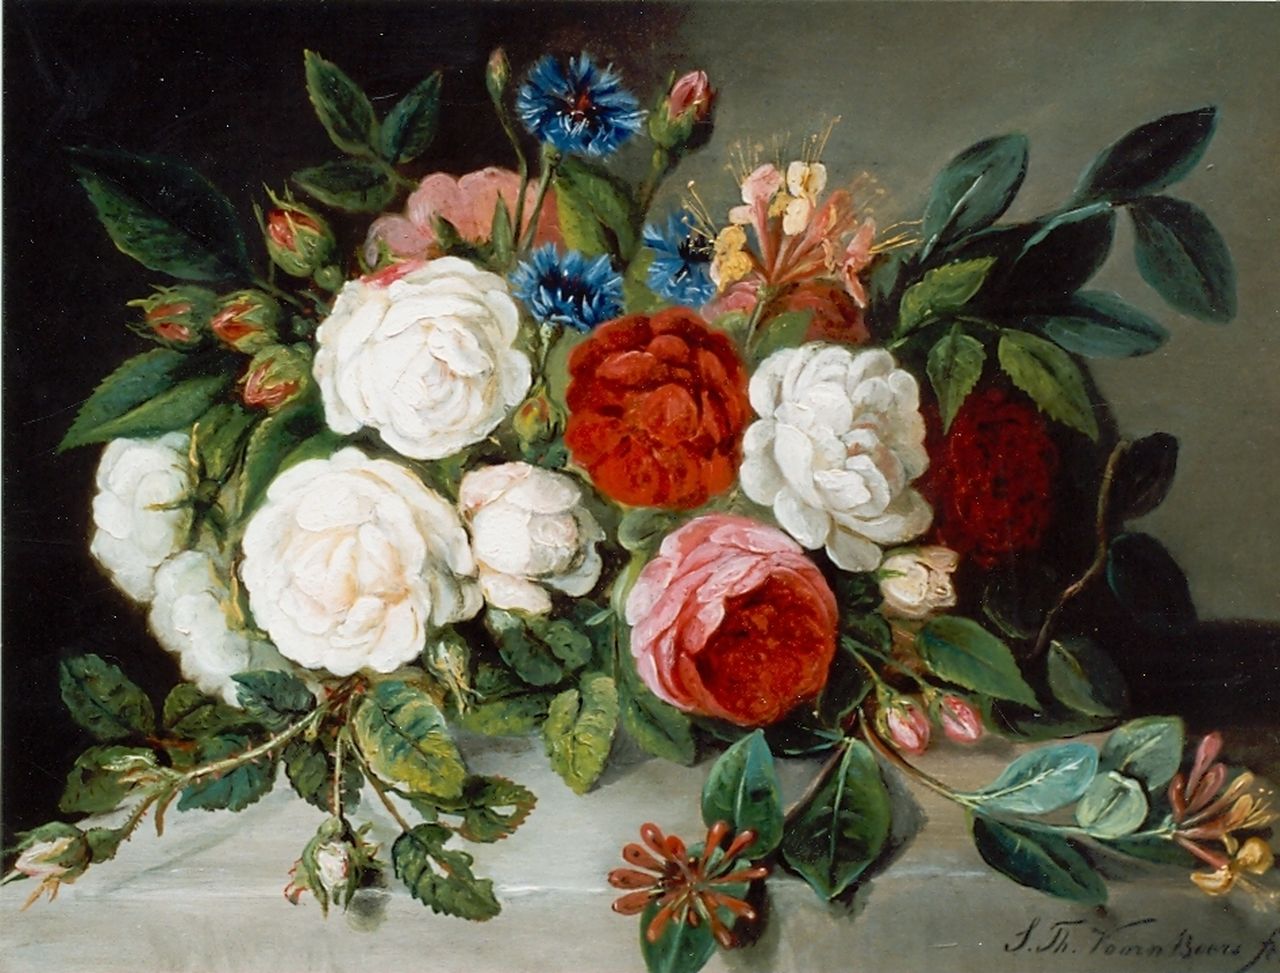 Voorn Boers S.T.  | Sebastiaan Theodorus Voorn Boers, Roses and cornflowers, Öl auf Leinwand 36,0 x 49,5 cm, signed l.r.